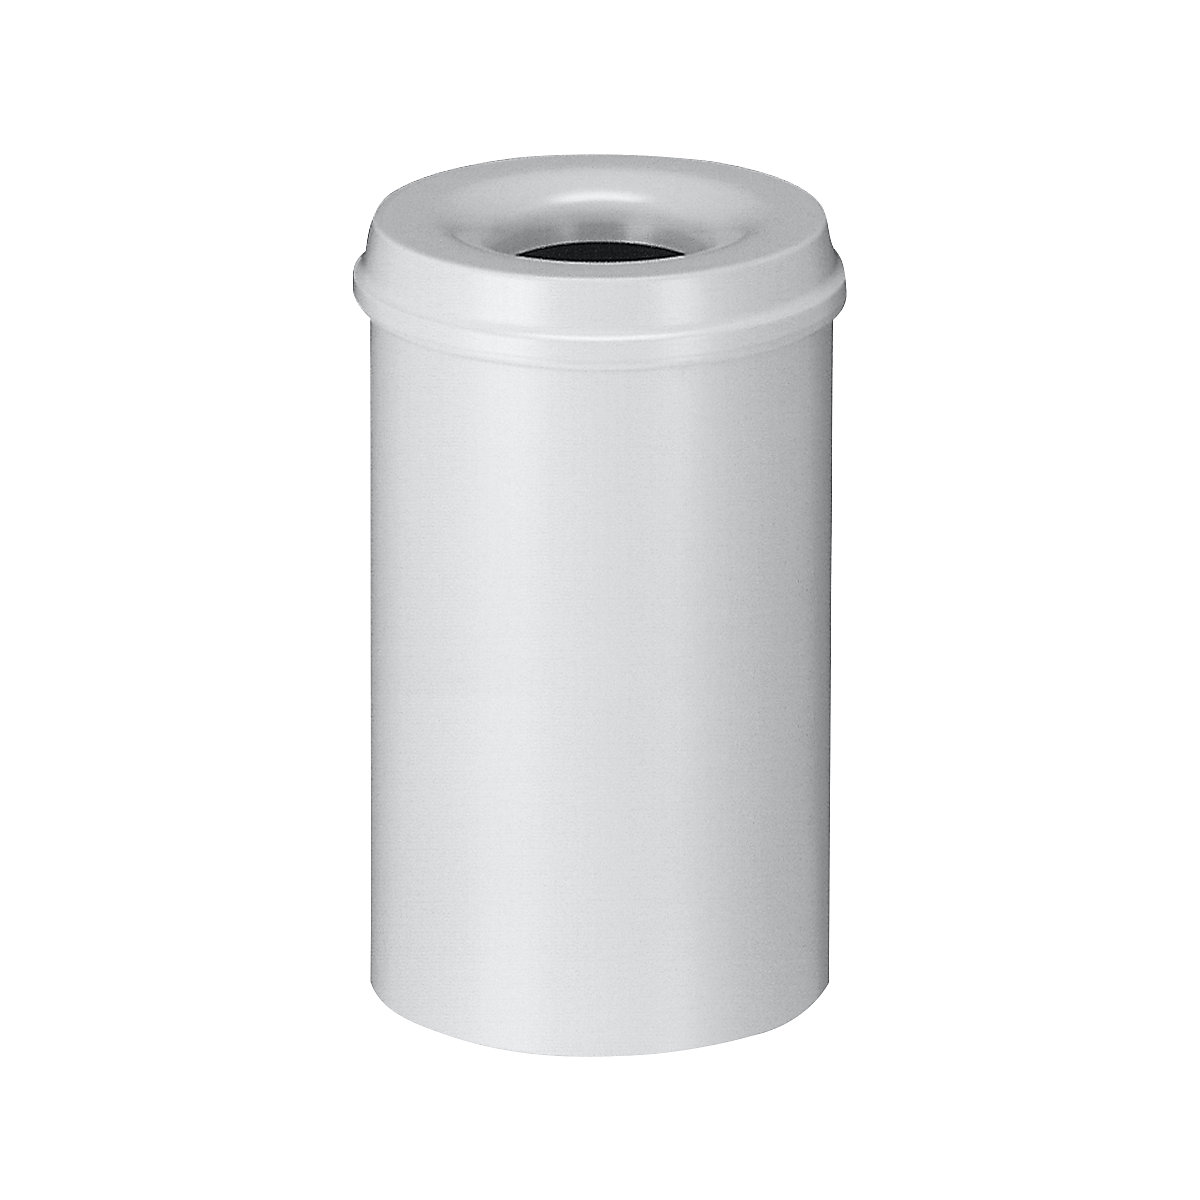 Sigurnosna kanta za papir, čelik, samogasiva, volumen 20 l, VxØ 426 x 260 mm, korpus u sivoj boji / vrh za gašenje u sivoj boji-6